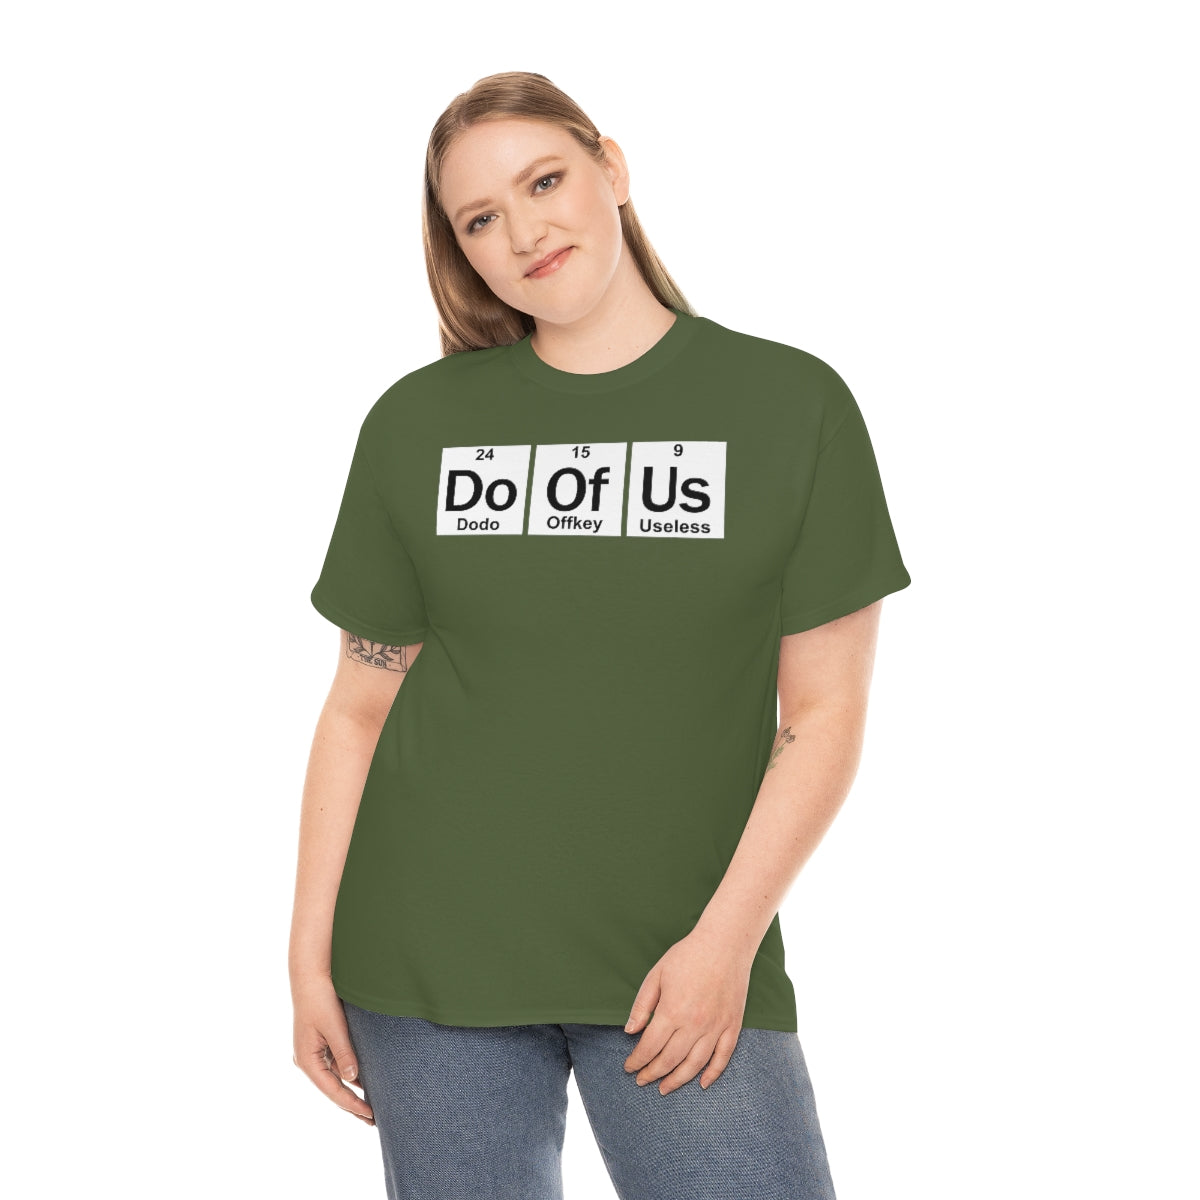 Element Style Doofus T-Shirt Unisex Short Sleeve Funny Gag GIft